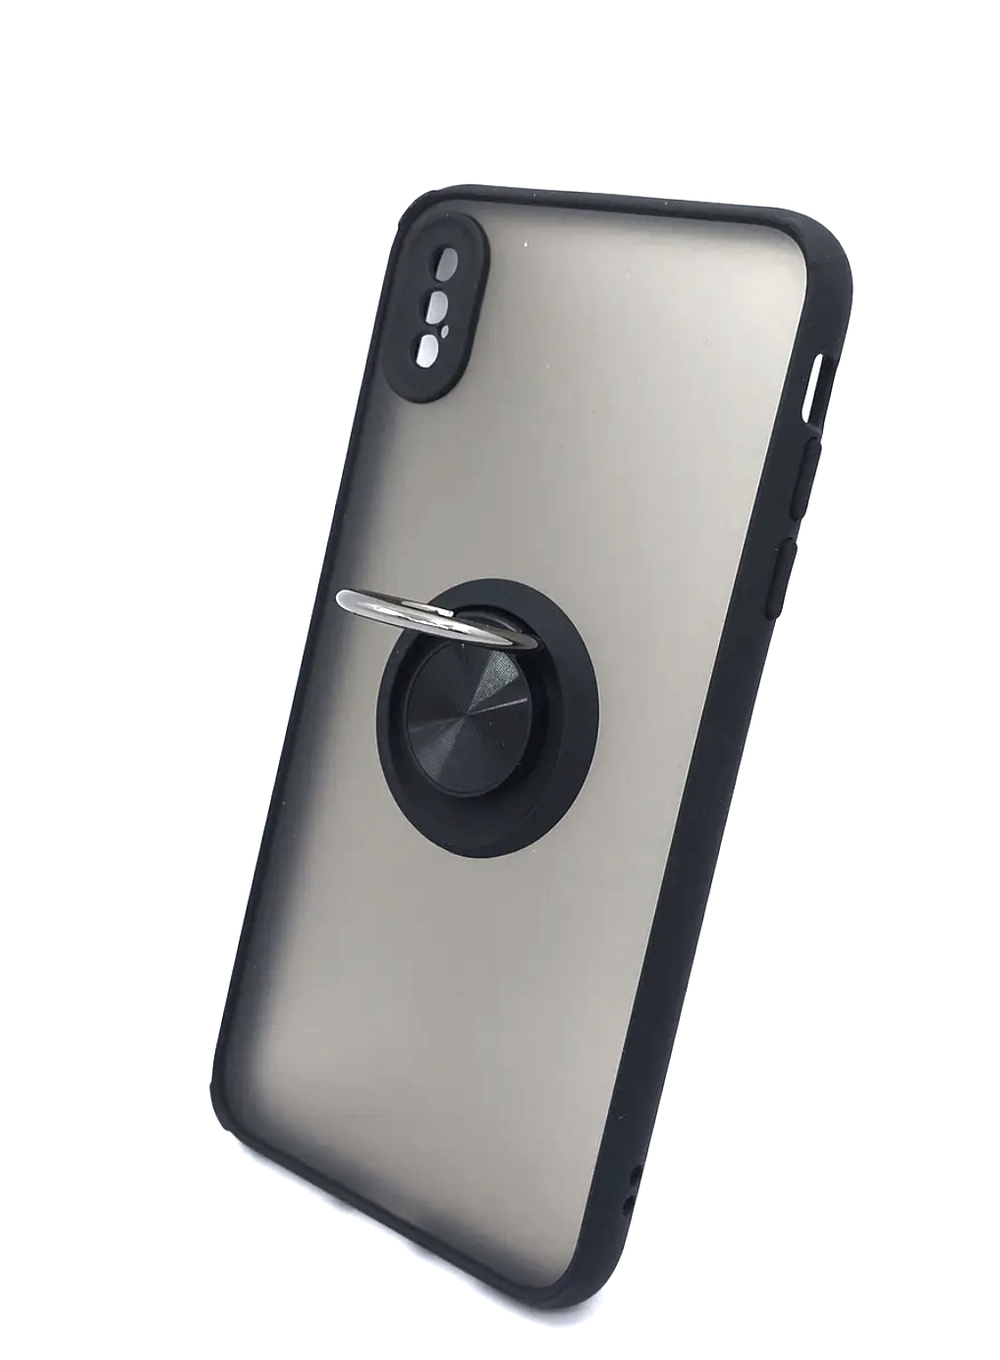 Чехол на iPhone XS Max / айфон, противоударный, с кольцом, подставкой, прозрачный